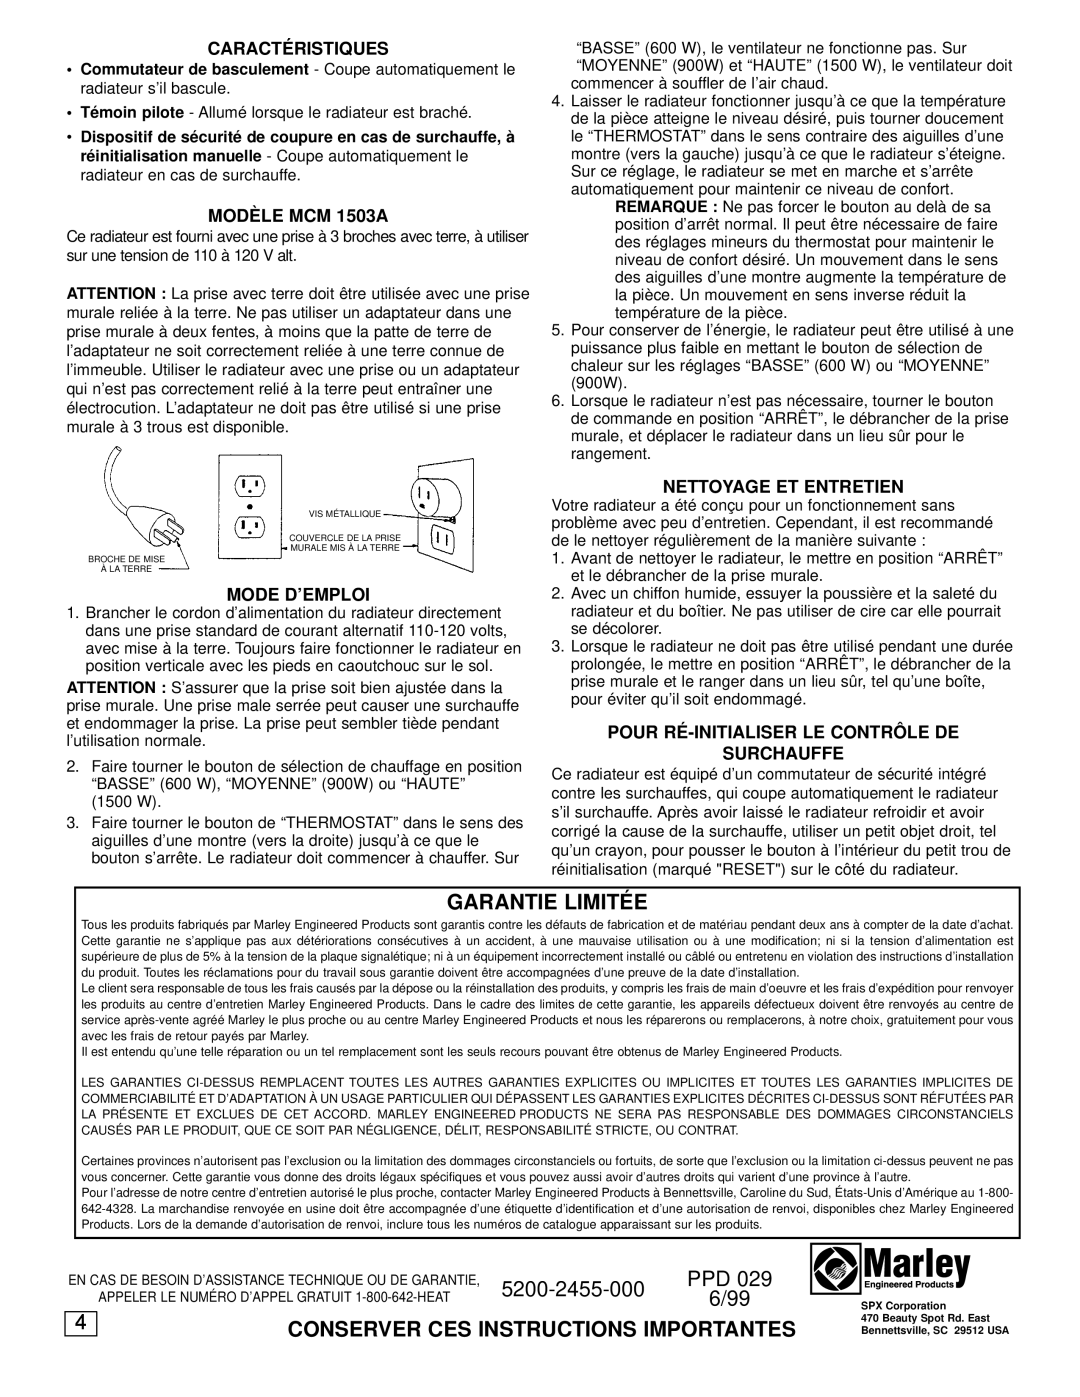 Marley Engineered Products MCM1503A Garantie Limité E, Conserver Ces Instructions Importantes, Caracté Ristiques, 6/99 